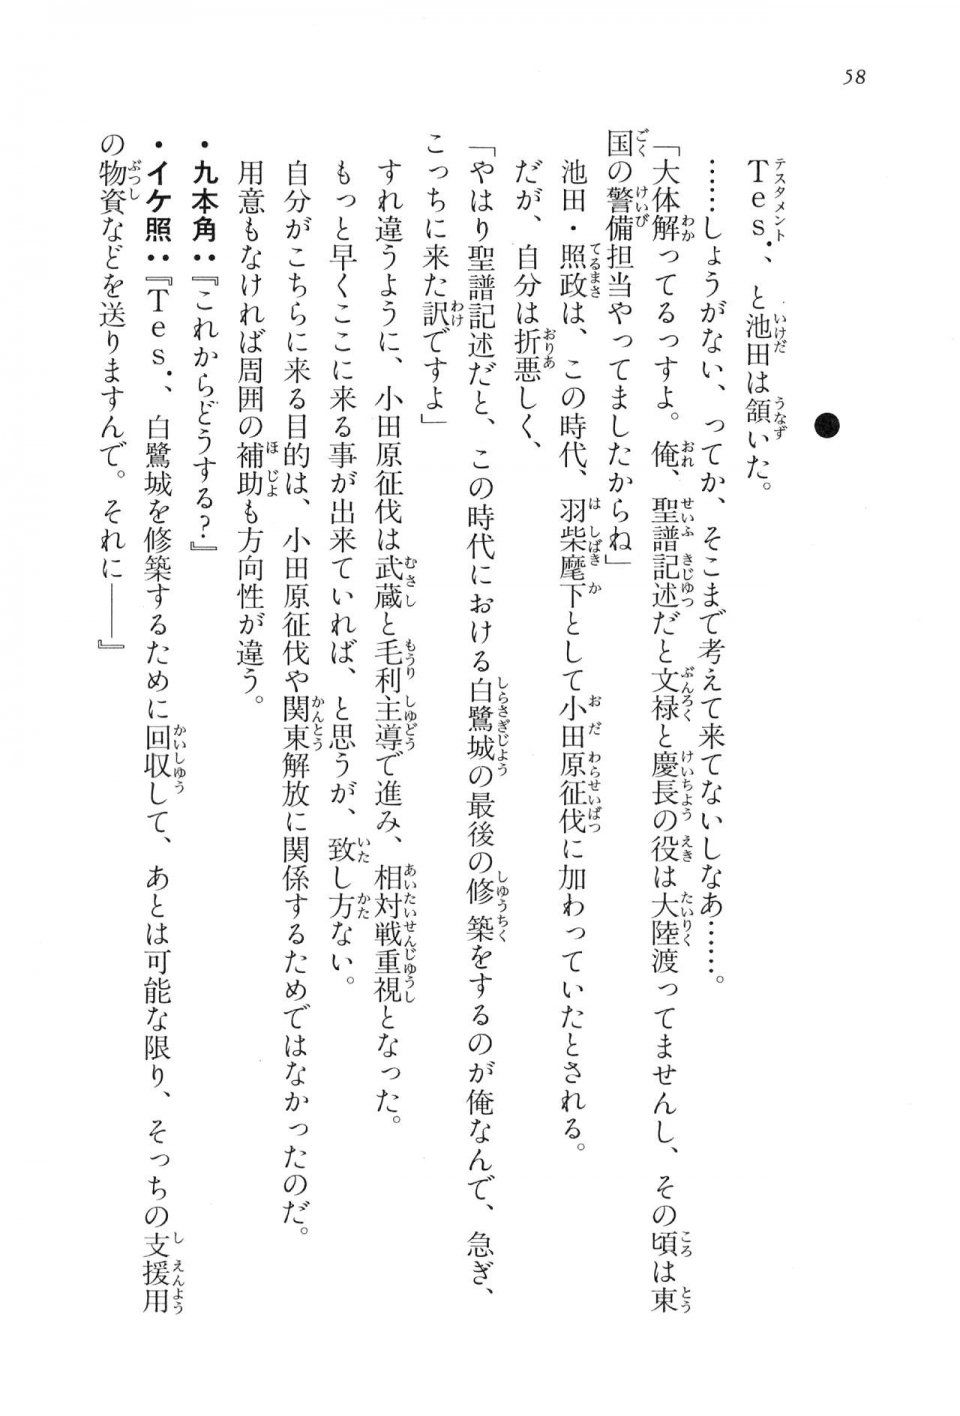 Kyoukai Senjou no Horizon LN Vol 16(7A) - Photo #58